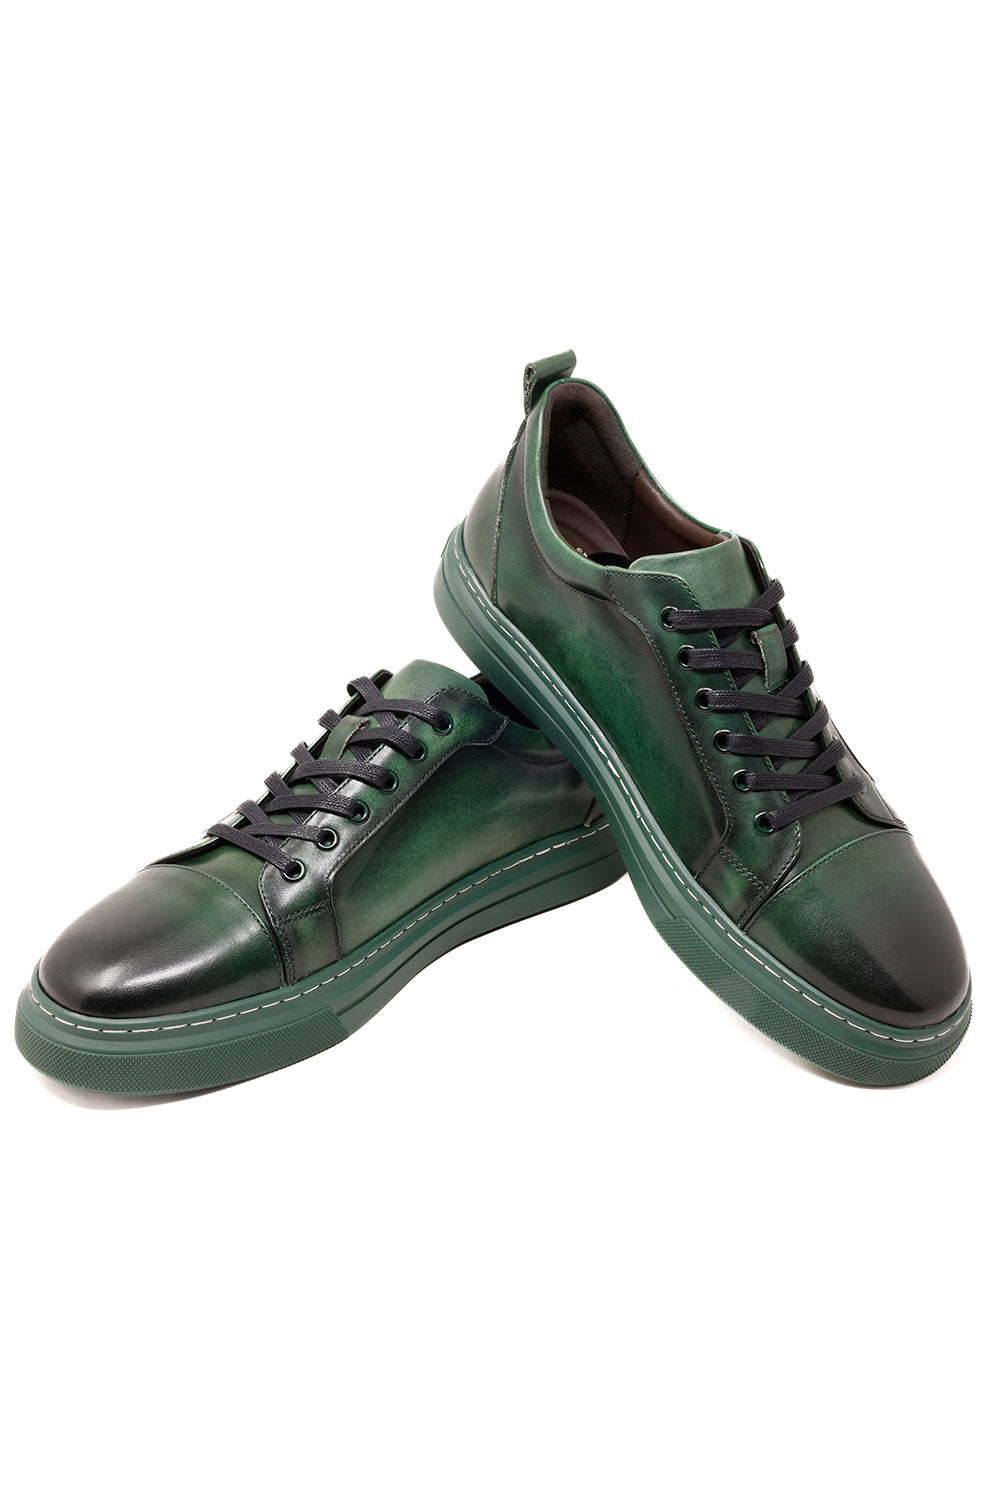 Barabas Men's Premium Leather Low Top Casual Sneaker 3SH21 Green